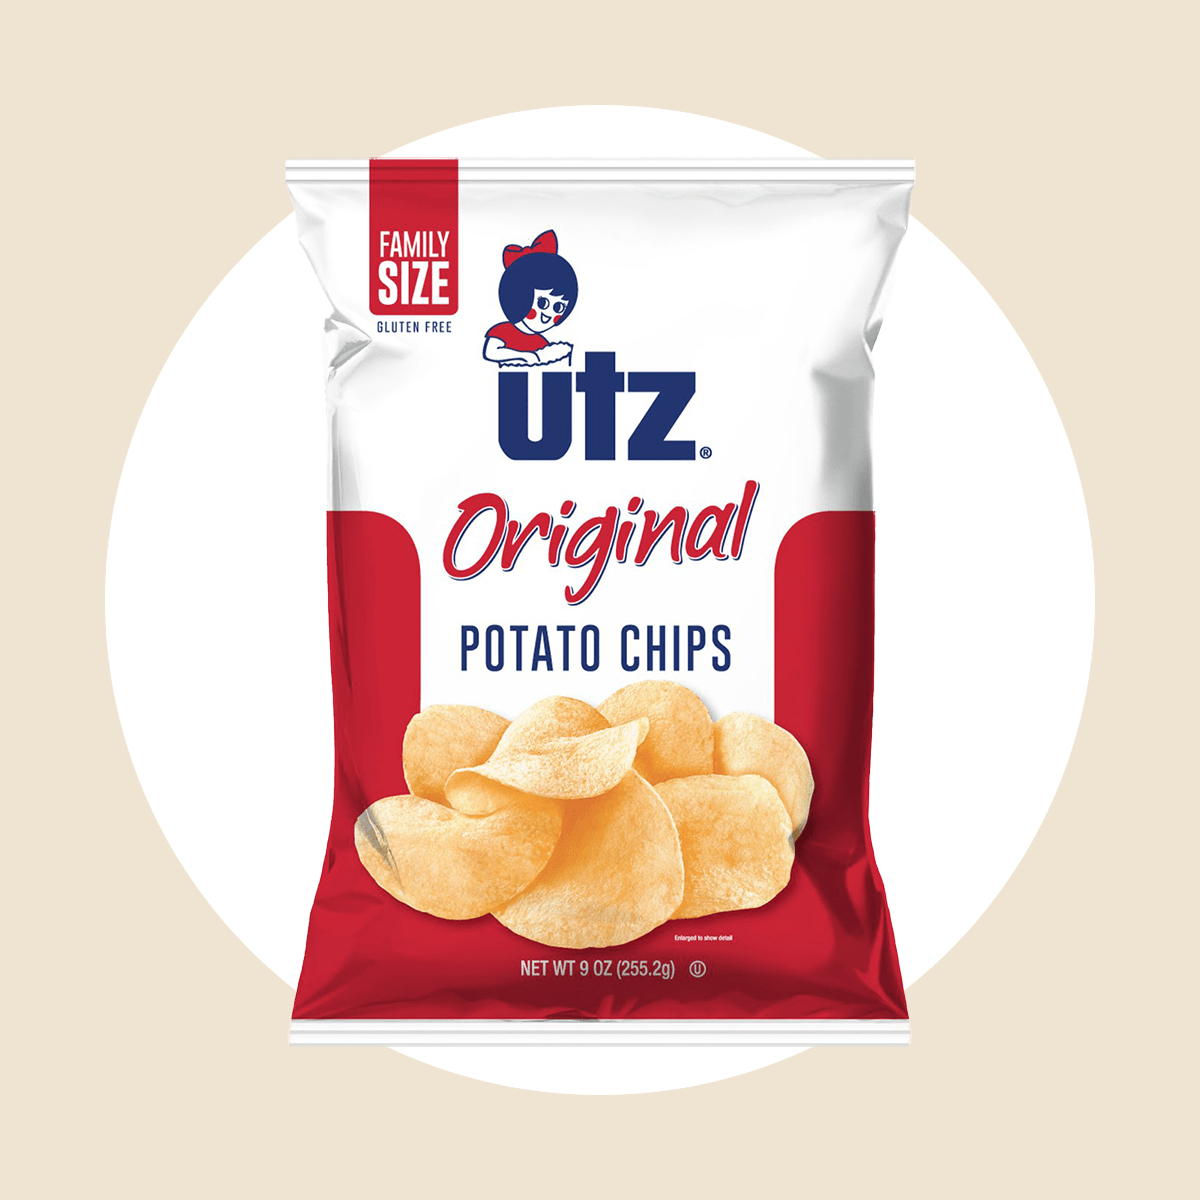 9盎司Utz Original Chips Ecomm通过沃尔玛